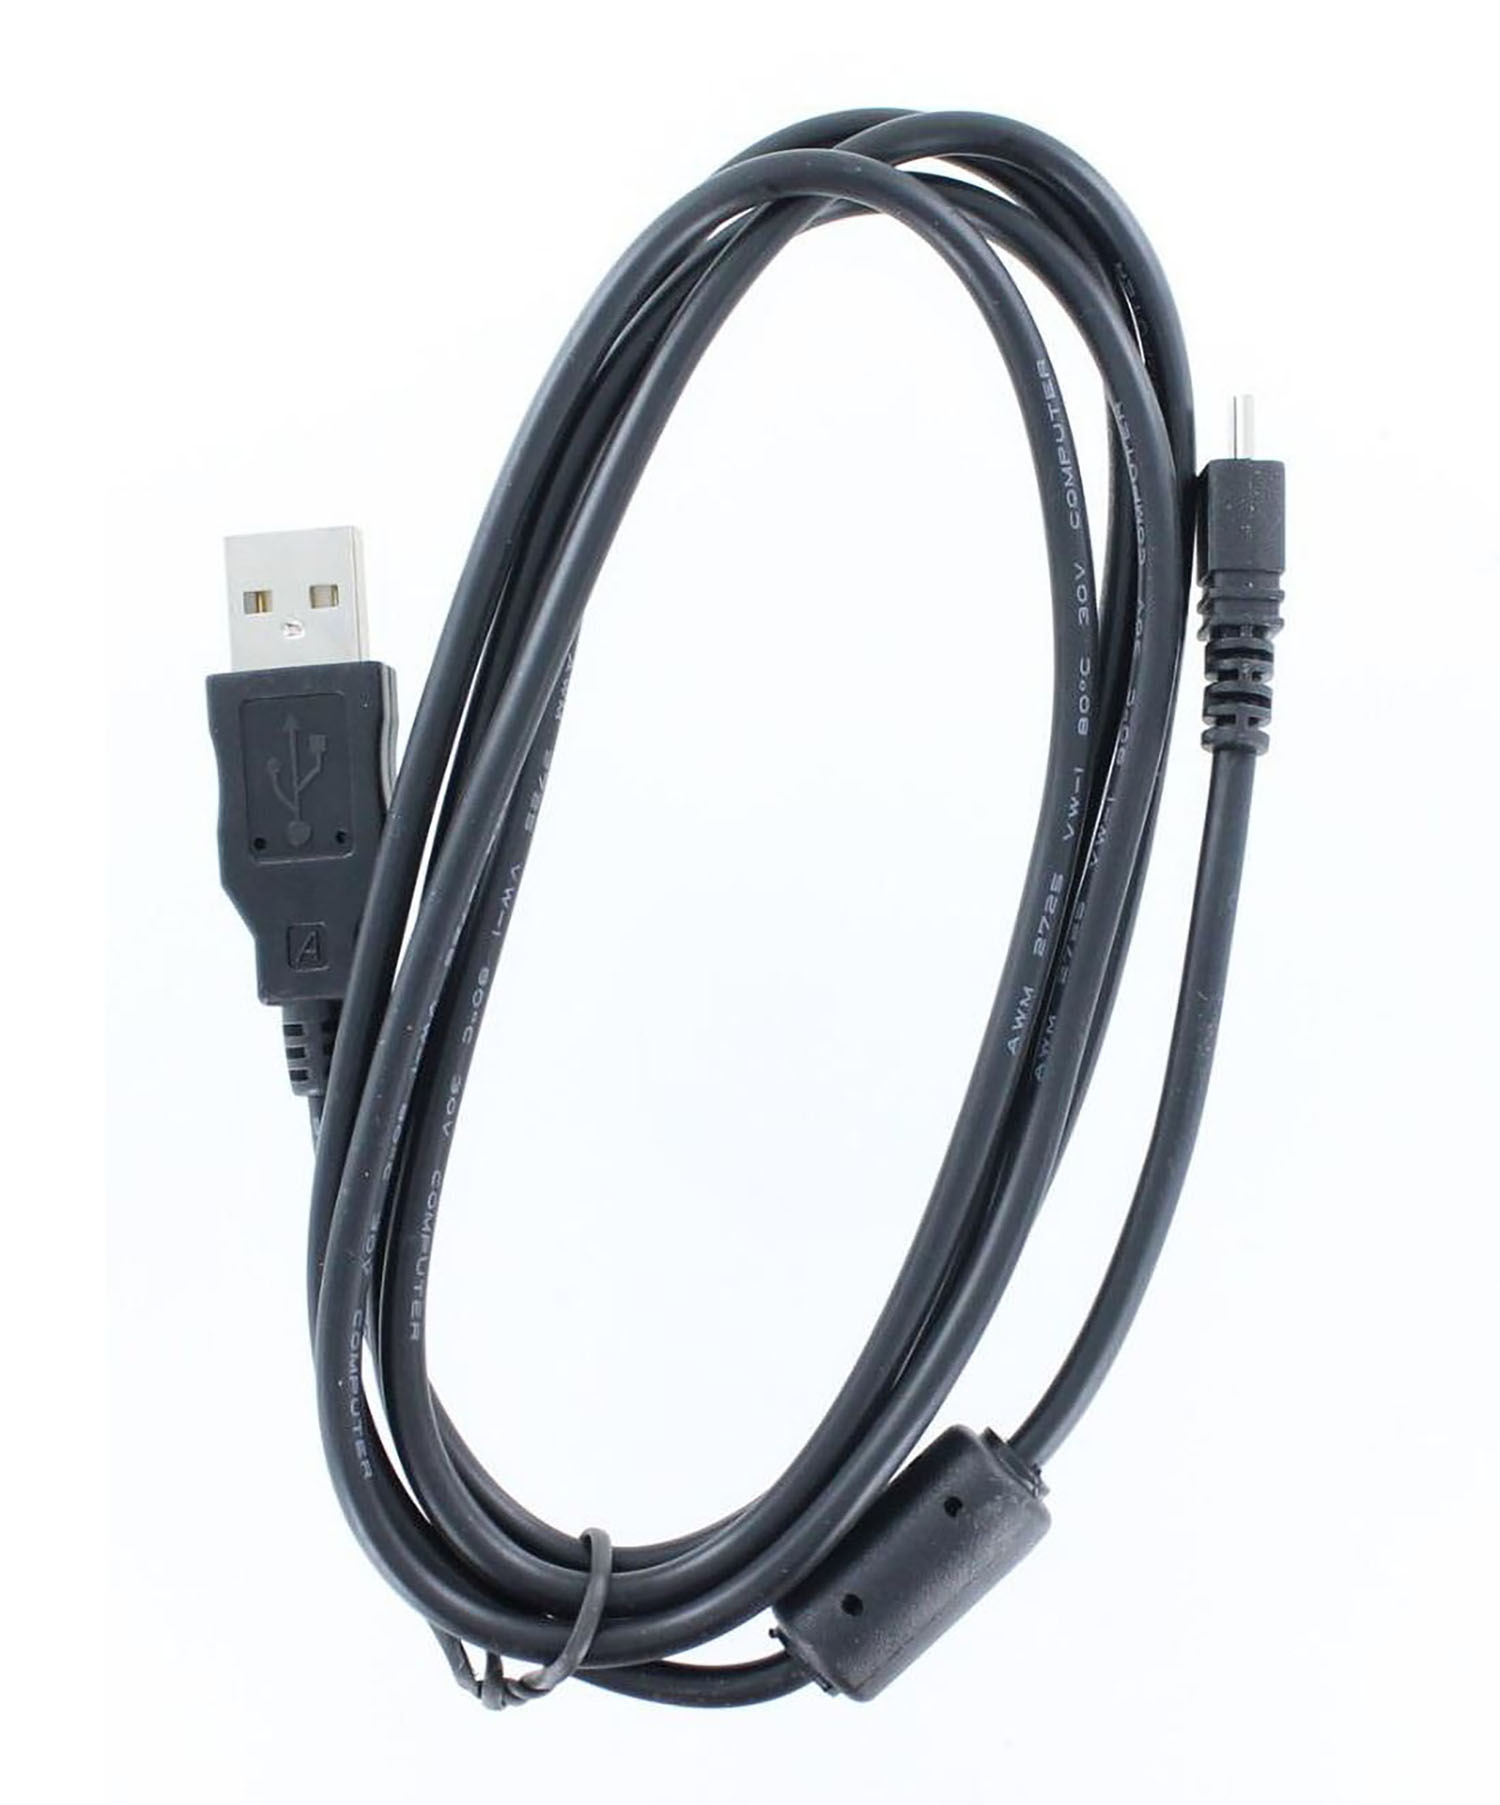 MOBILOTEC USB-Datenkabel kompatibel mit JX370 FinePix schwarz Fuji, Fuji Zubehör